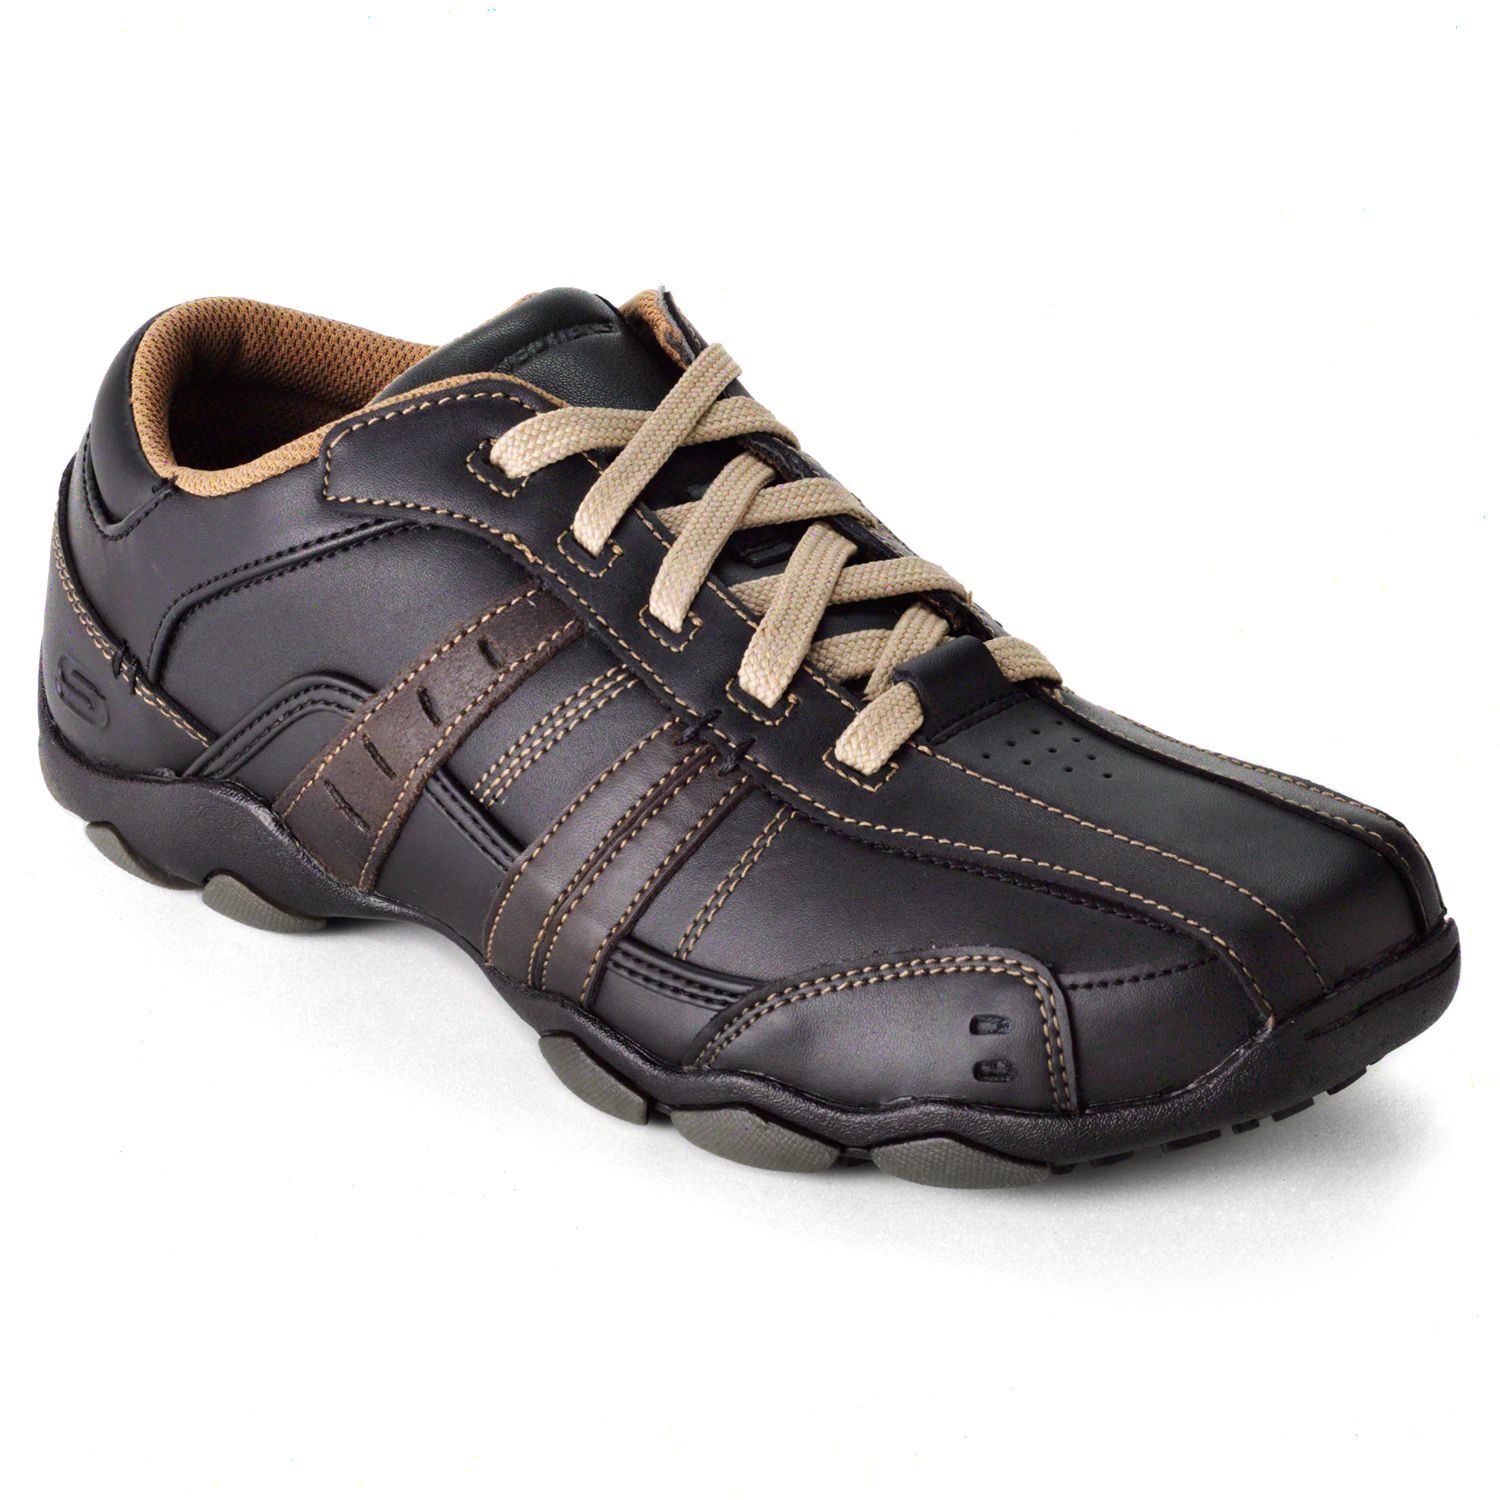 skechers diameter vassell men's shoes wide width